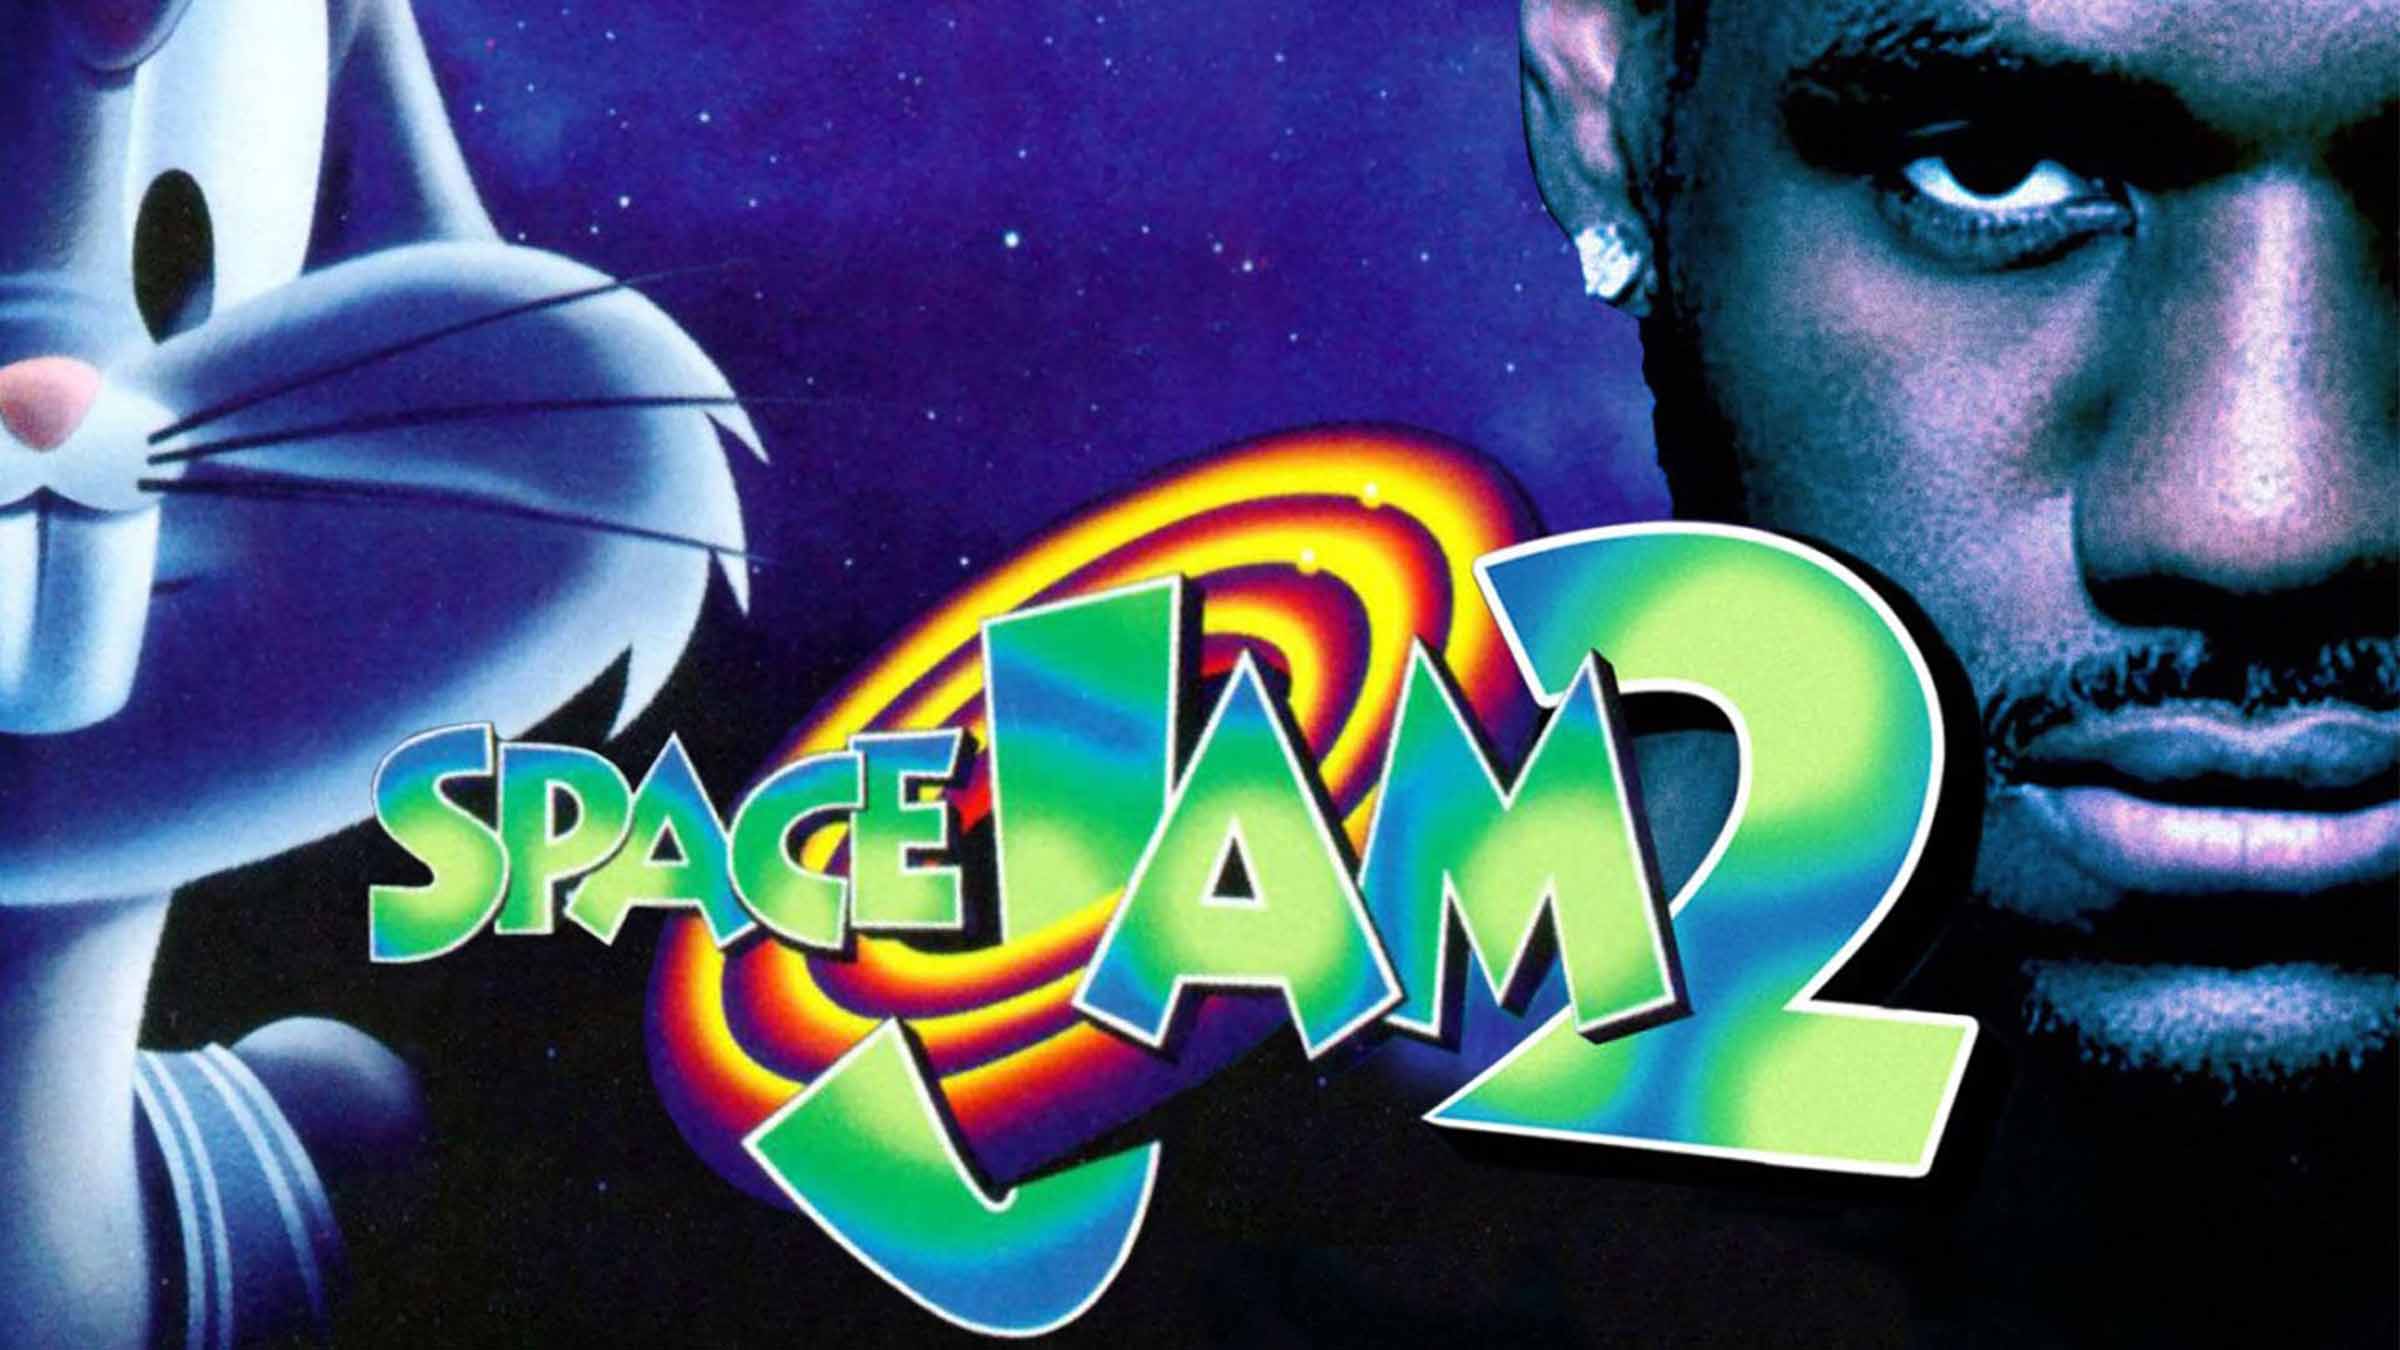 space jam 2 movie